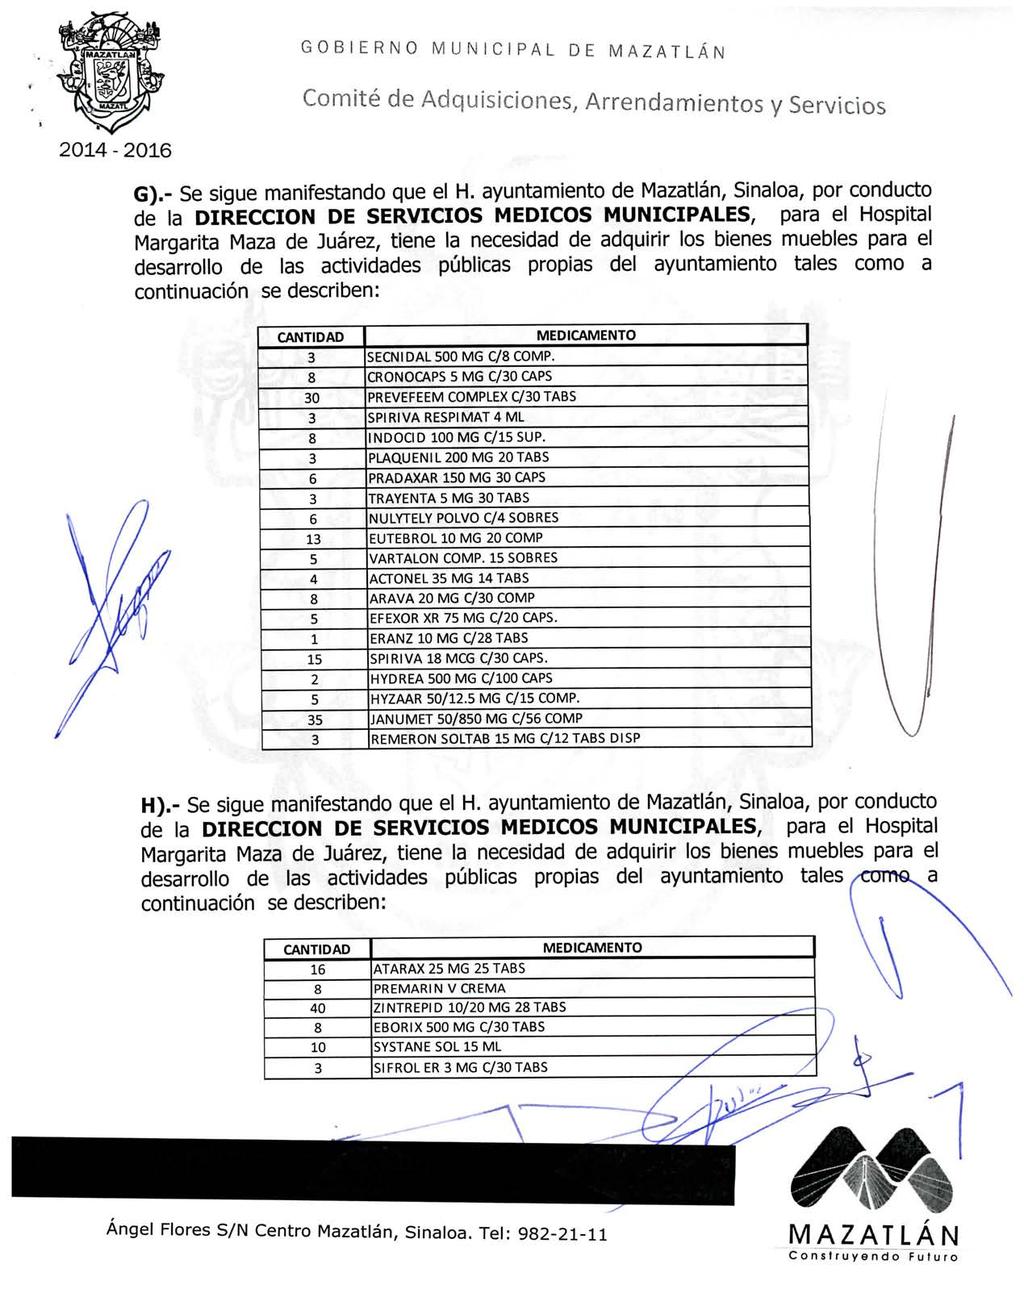 04-0 G).- Se sigue manifestando que el H. ayuntamiento de Mazatlán, Sinaloa, por conducto 0 4 SECNIDAL00 MG C/ COMP.